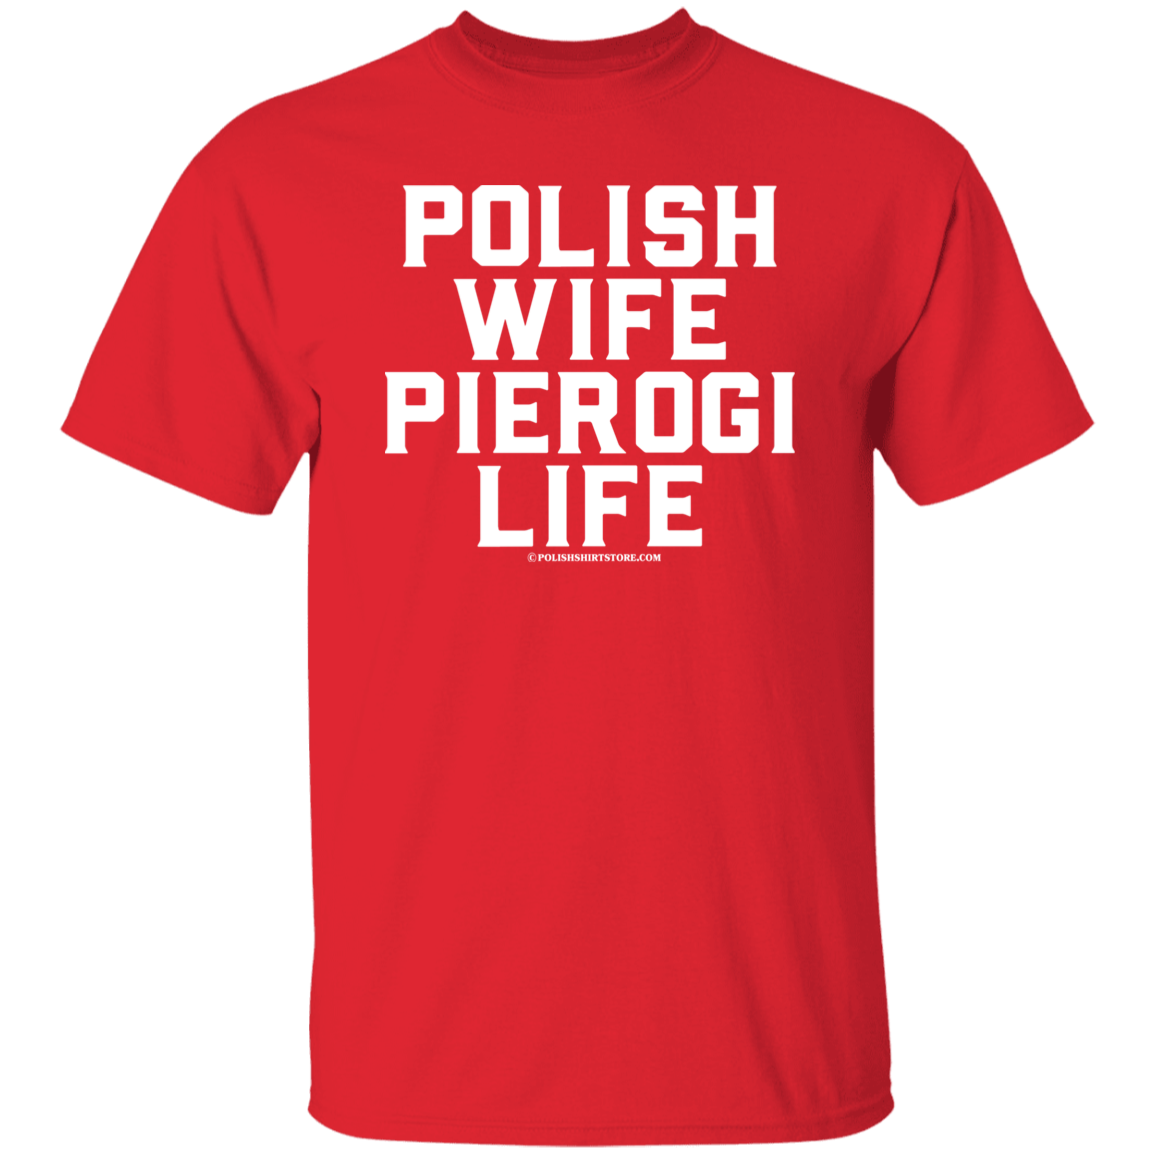 Polish Wife Pierogi Life Apparel CustomCat G500 5.3 oz. T-Shirt Red S